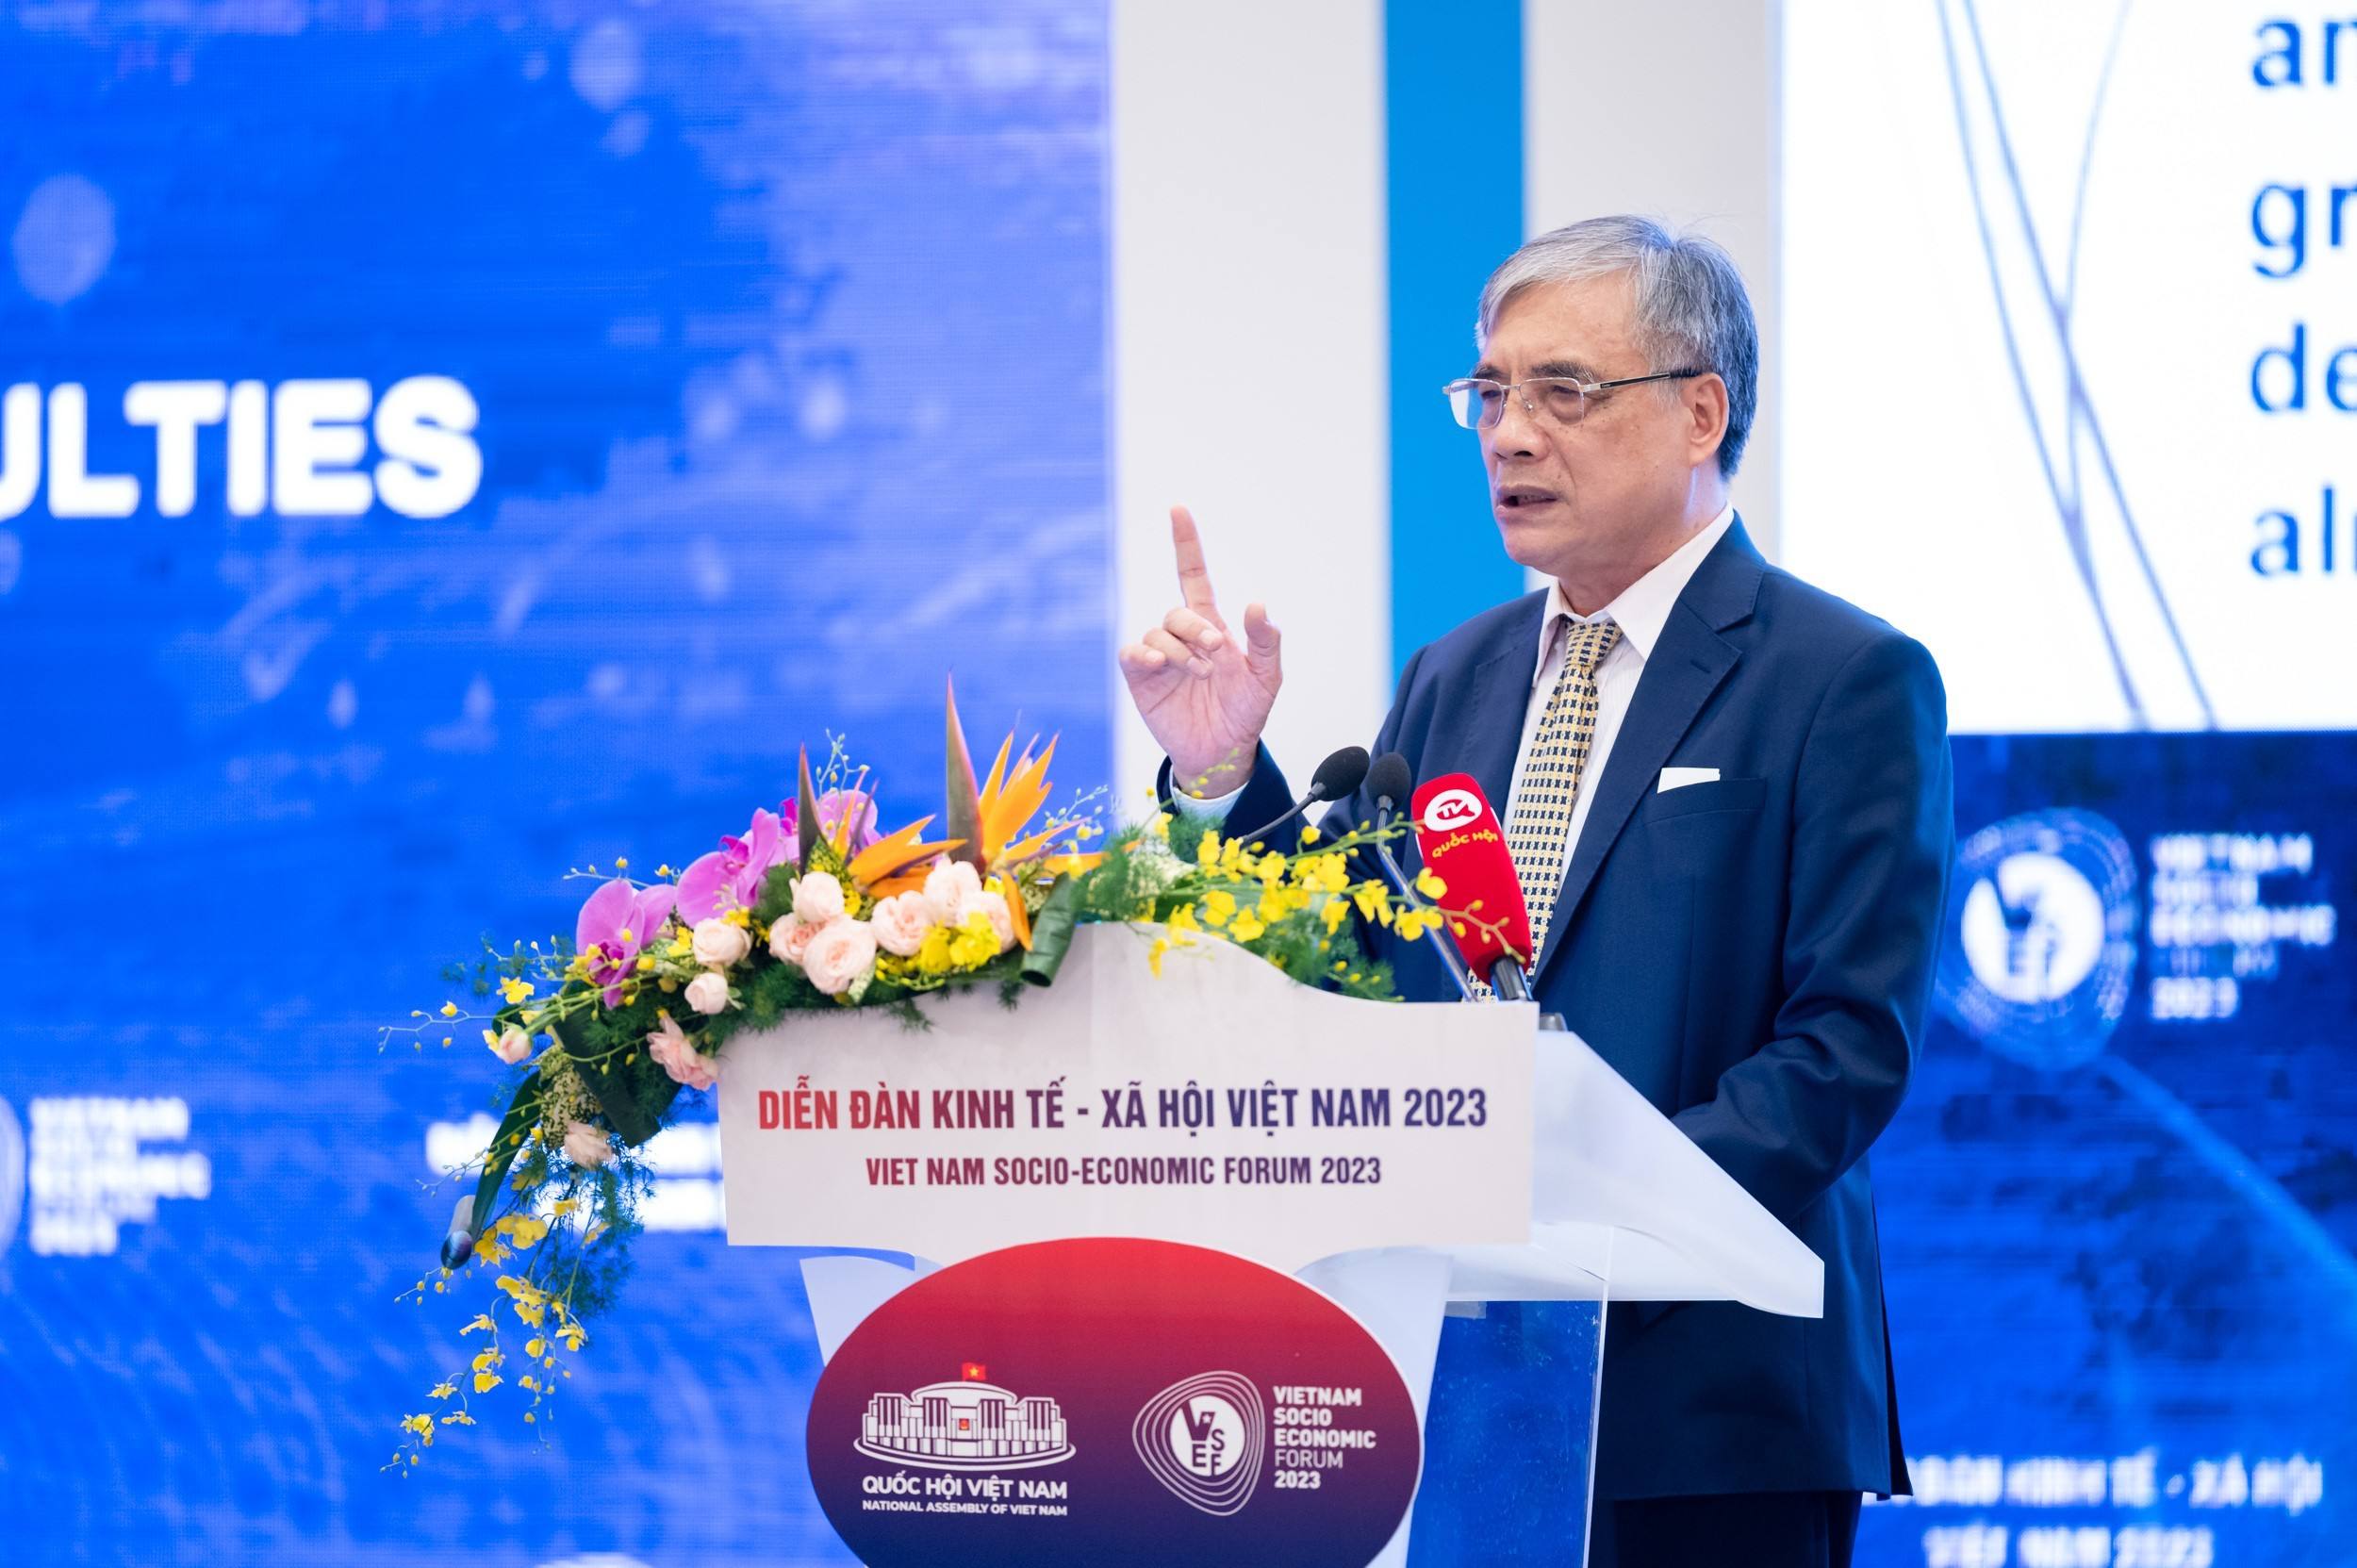 PGS.TS Trần Đình Thiên - Nguyên Viện trưởng Viện Kinh tế Việt Nam trình bày tham luận: "Khơi thông nguồn lực, phát huy nội lực, đưa nền kinh tế sớm phục hồi và bứt phá phát triển"